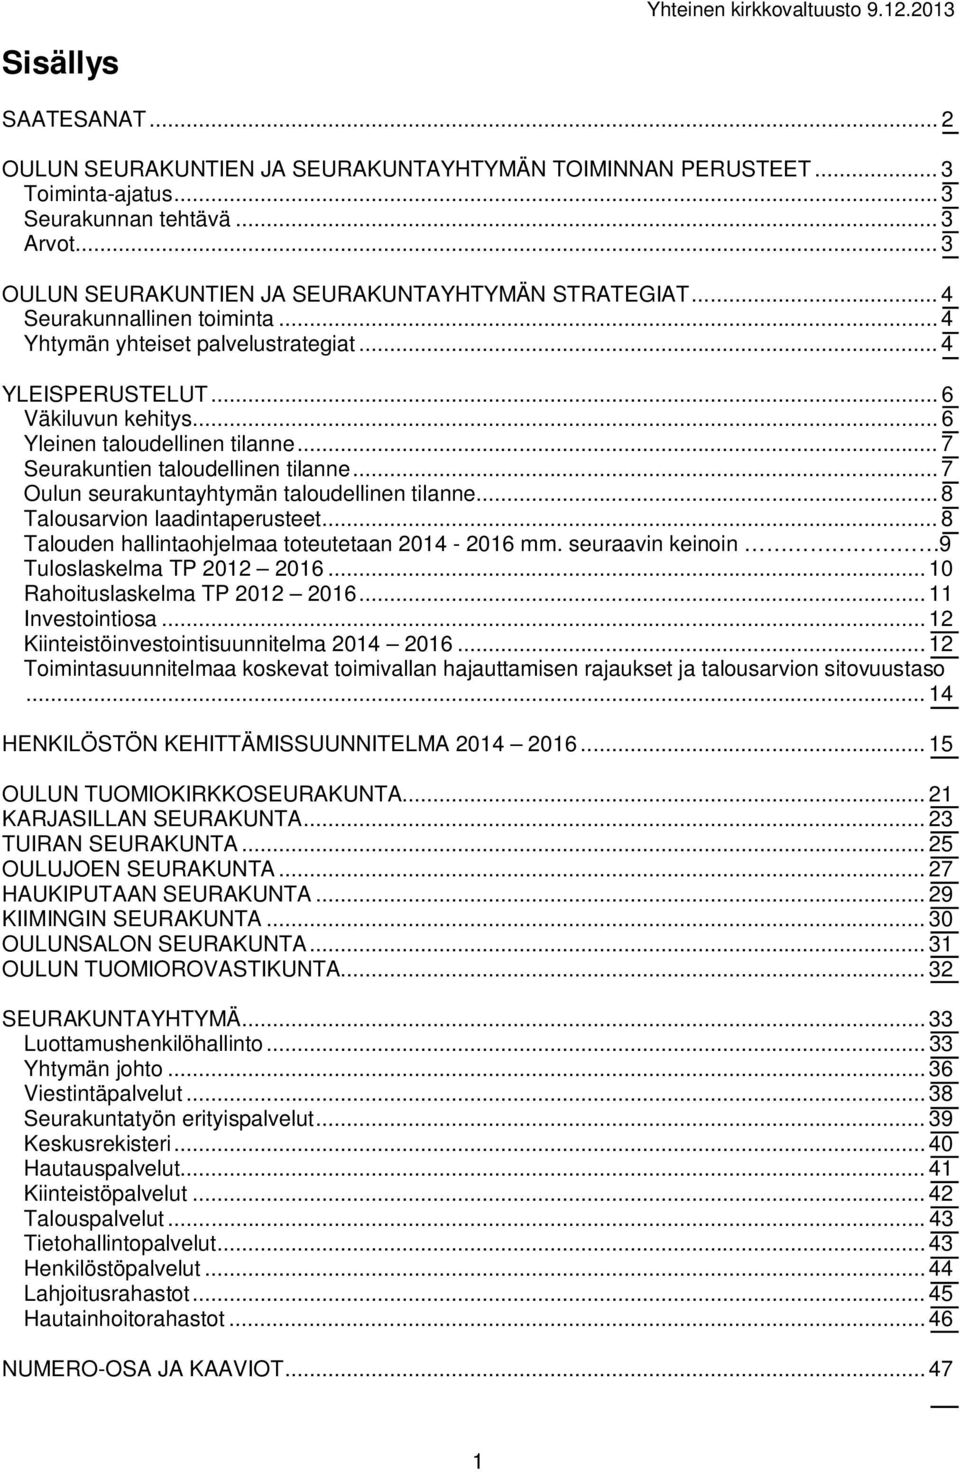 .. 7 Oulun seurakuntayhtymän taloudellinen tilanne... 8 Talousarvion laadintaperusteet... 8 Talouden hallintaohjelmaa toteutetaan 2014-2016 mm. seuraavin keinoin 9 Tuloslaskelma TP 2012 2016.